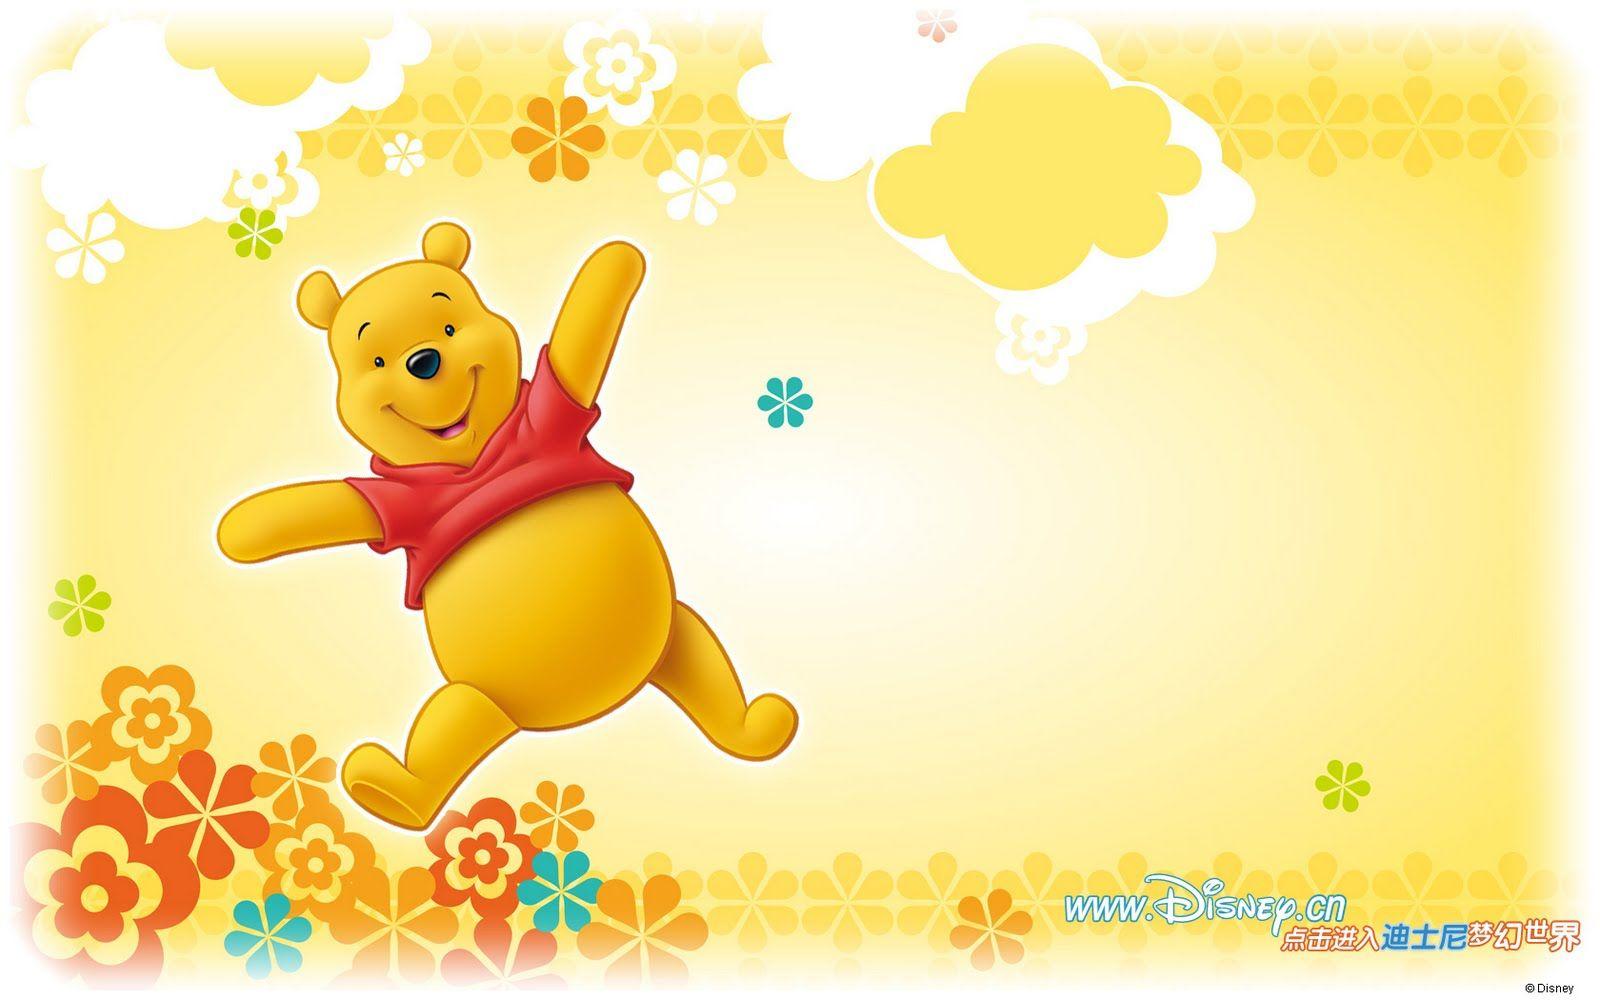 Wallpaper Winnie The Pooh